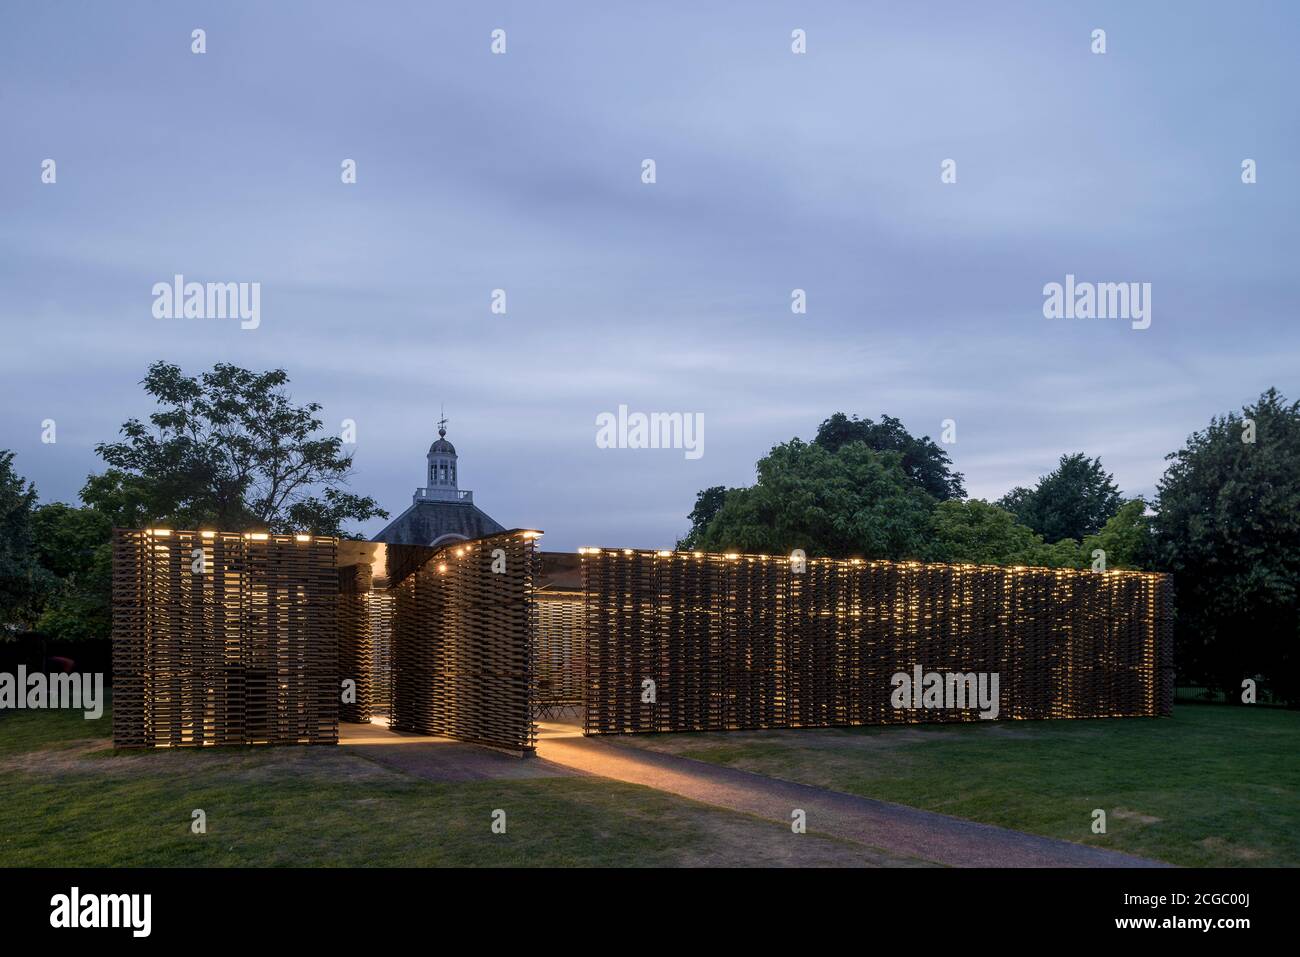 Il Padiglione della serpentina 2018 dell'architetto messicano Frida Escobedo, installato di fronte alla Serpentine Gallery, Kensington Gardens, Londra, Regno Unito. Foto Stock